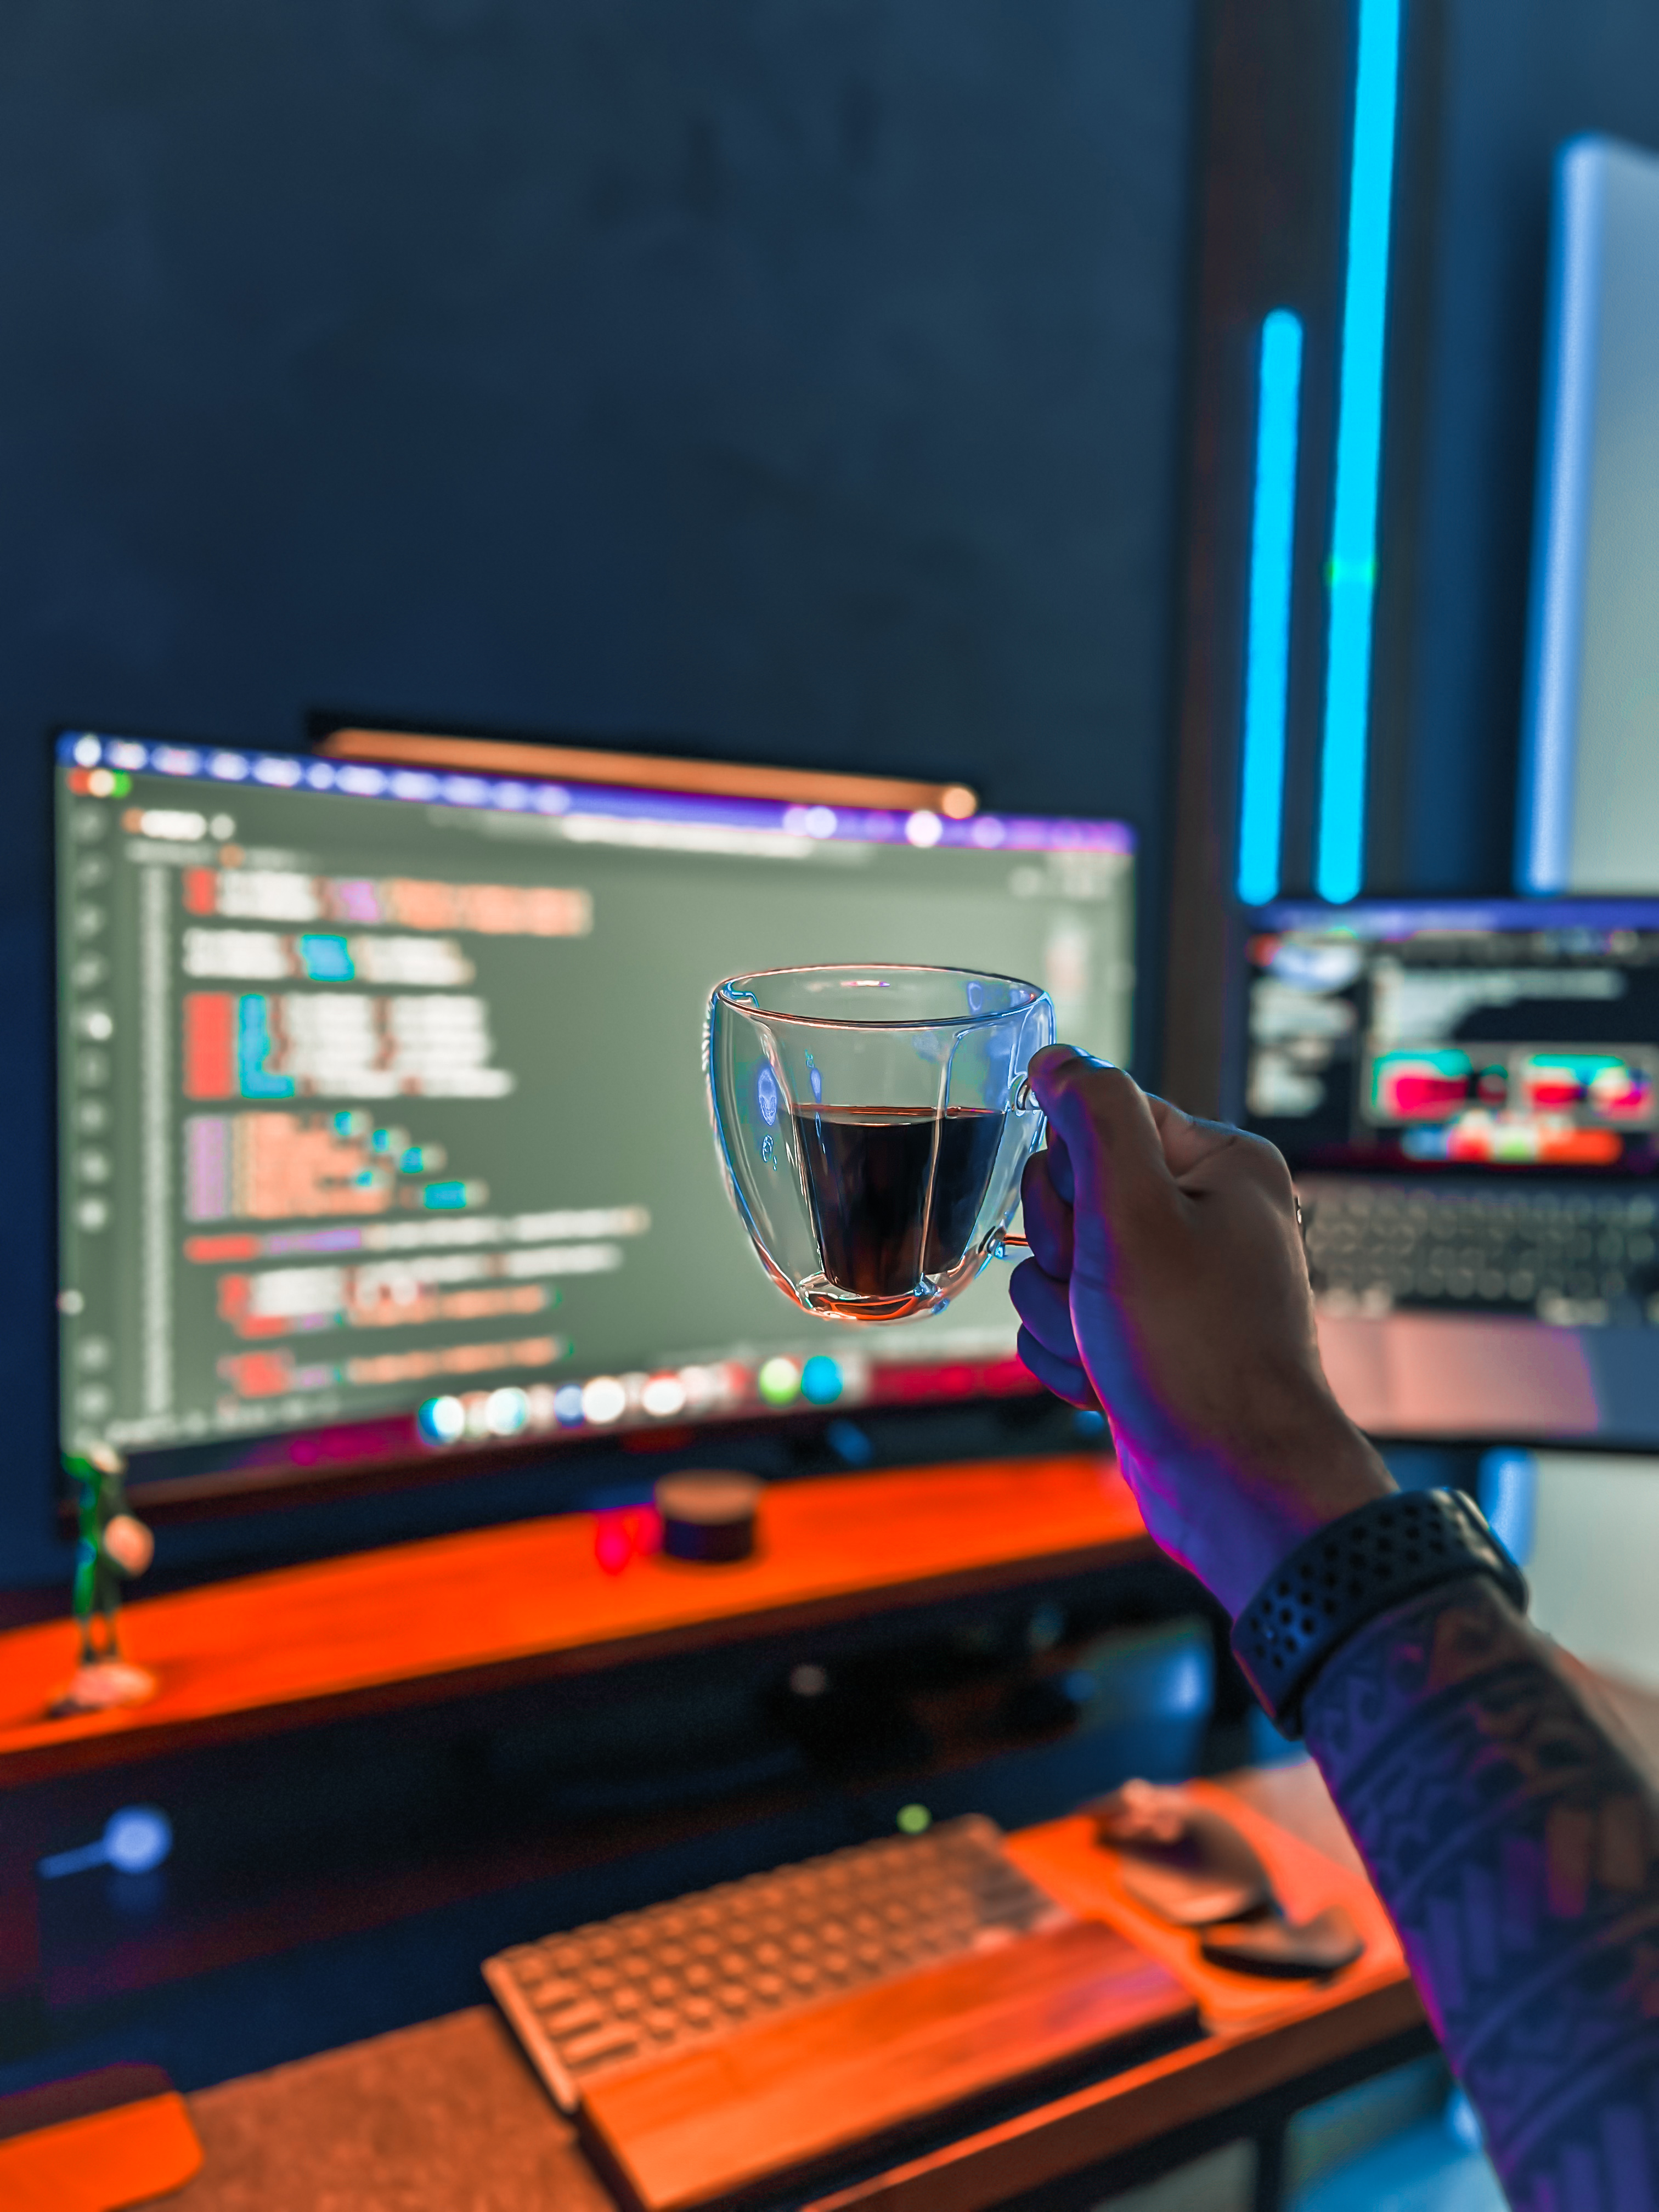 Imagem de 2 monitores exibindo código e uma xicara de café.